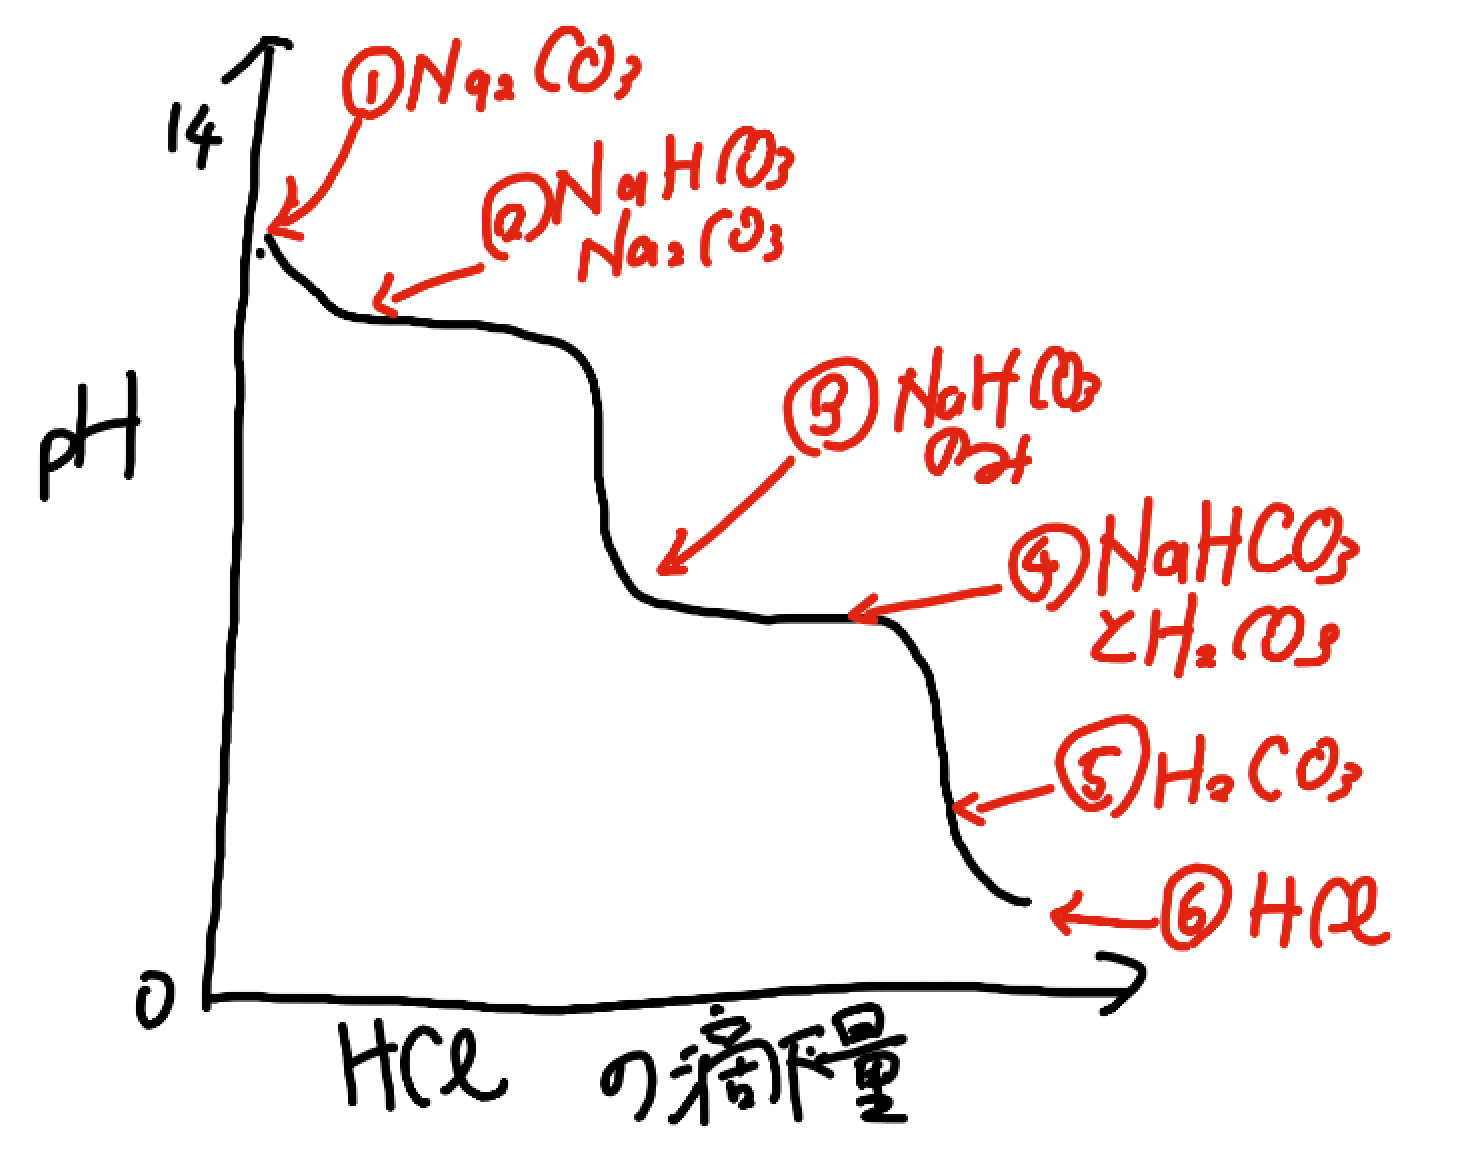 炭酸ナトリウムの二段滴定の分解図